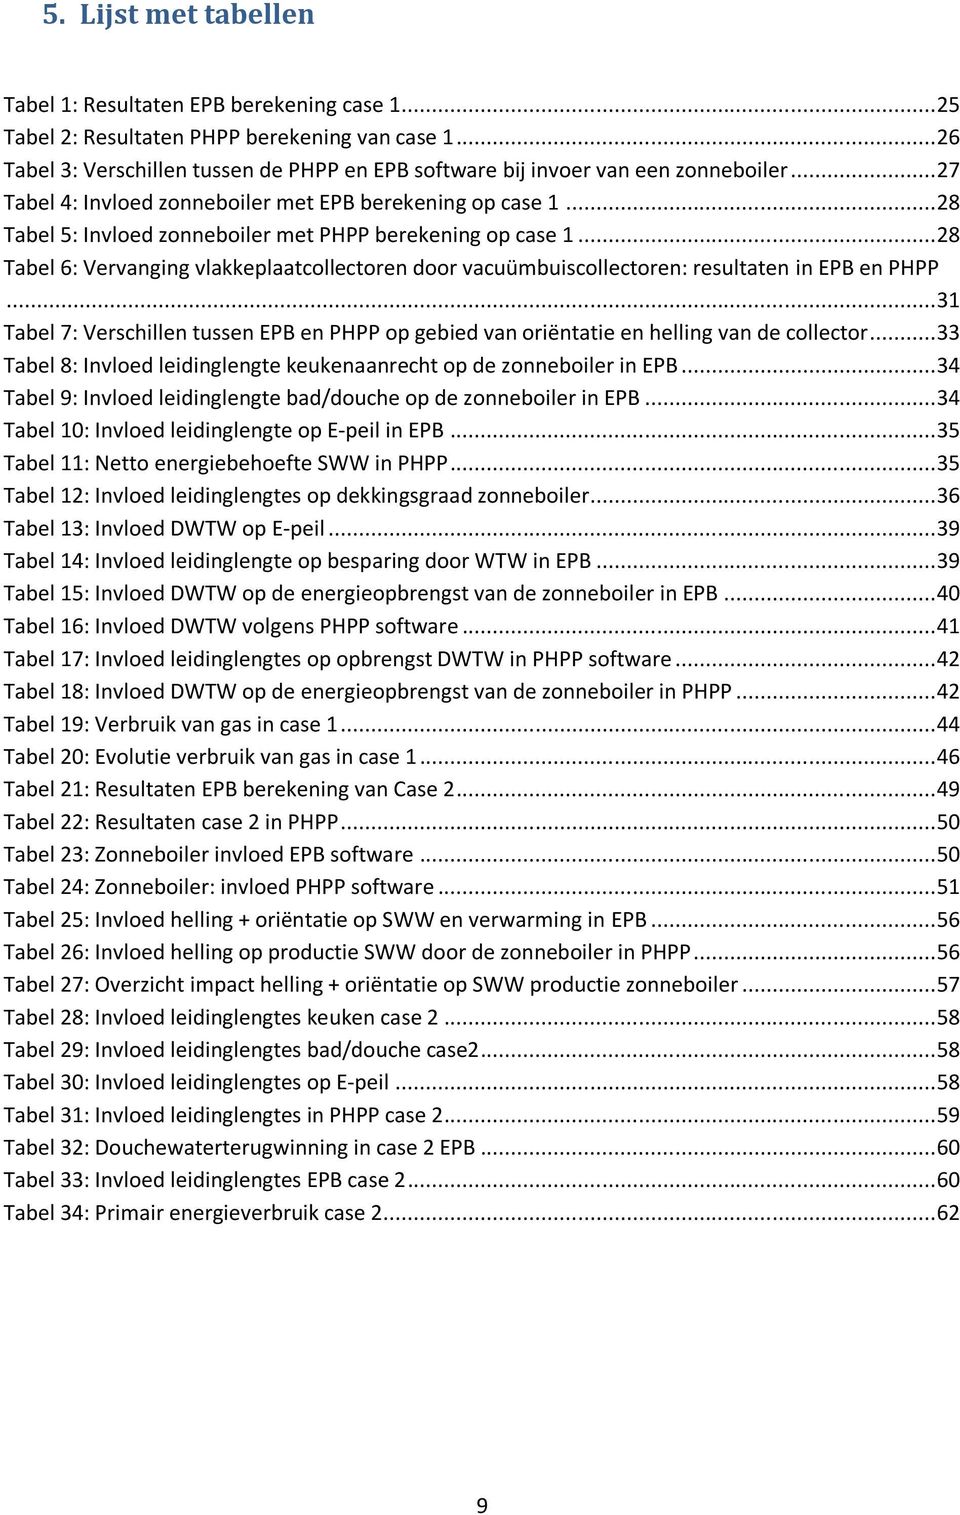 .. 28 Tabel 5: Invloed zonneboiler met PHPP berekening op case 1... 28 Tabel 6: Vervanging vlakkeplaatcollectoren door vacuümbuiscollectoren: resultaten in EPB en PHPP.